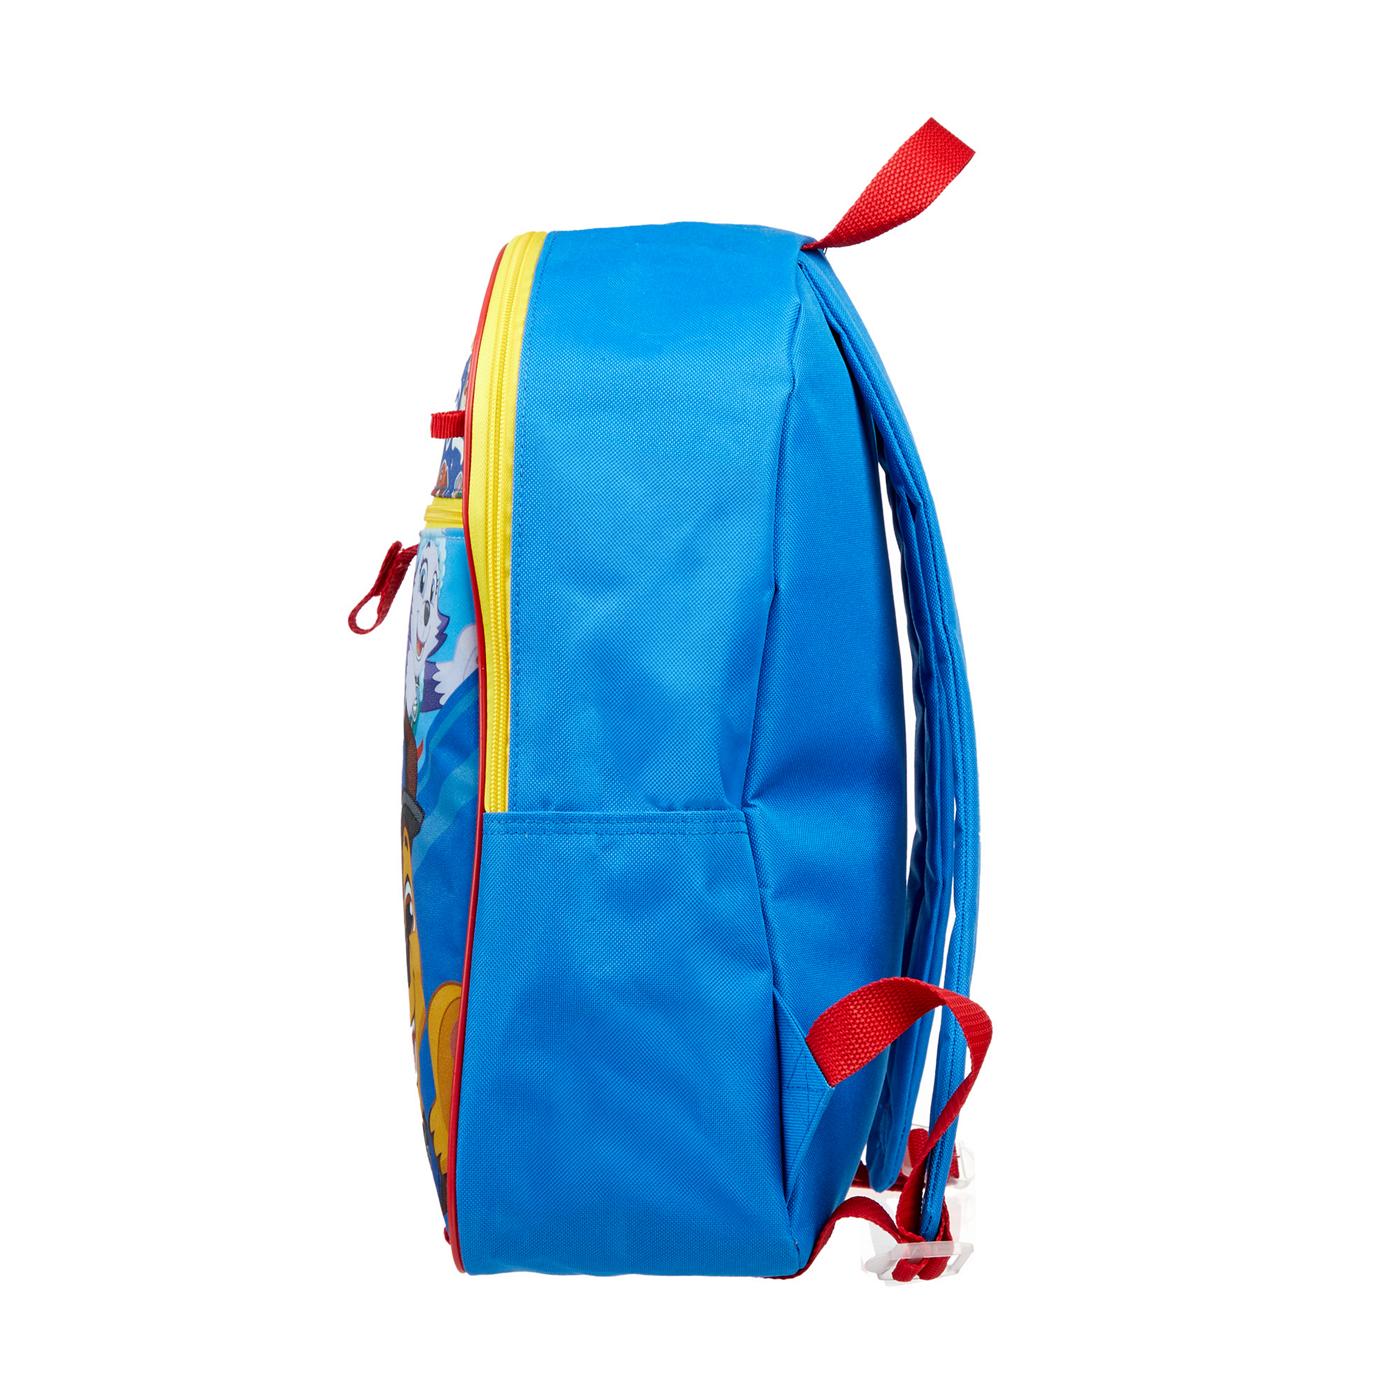 Nickelodeon Paw Patrol Backpack Set; image 5 of 5